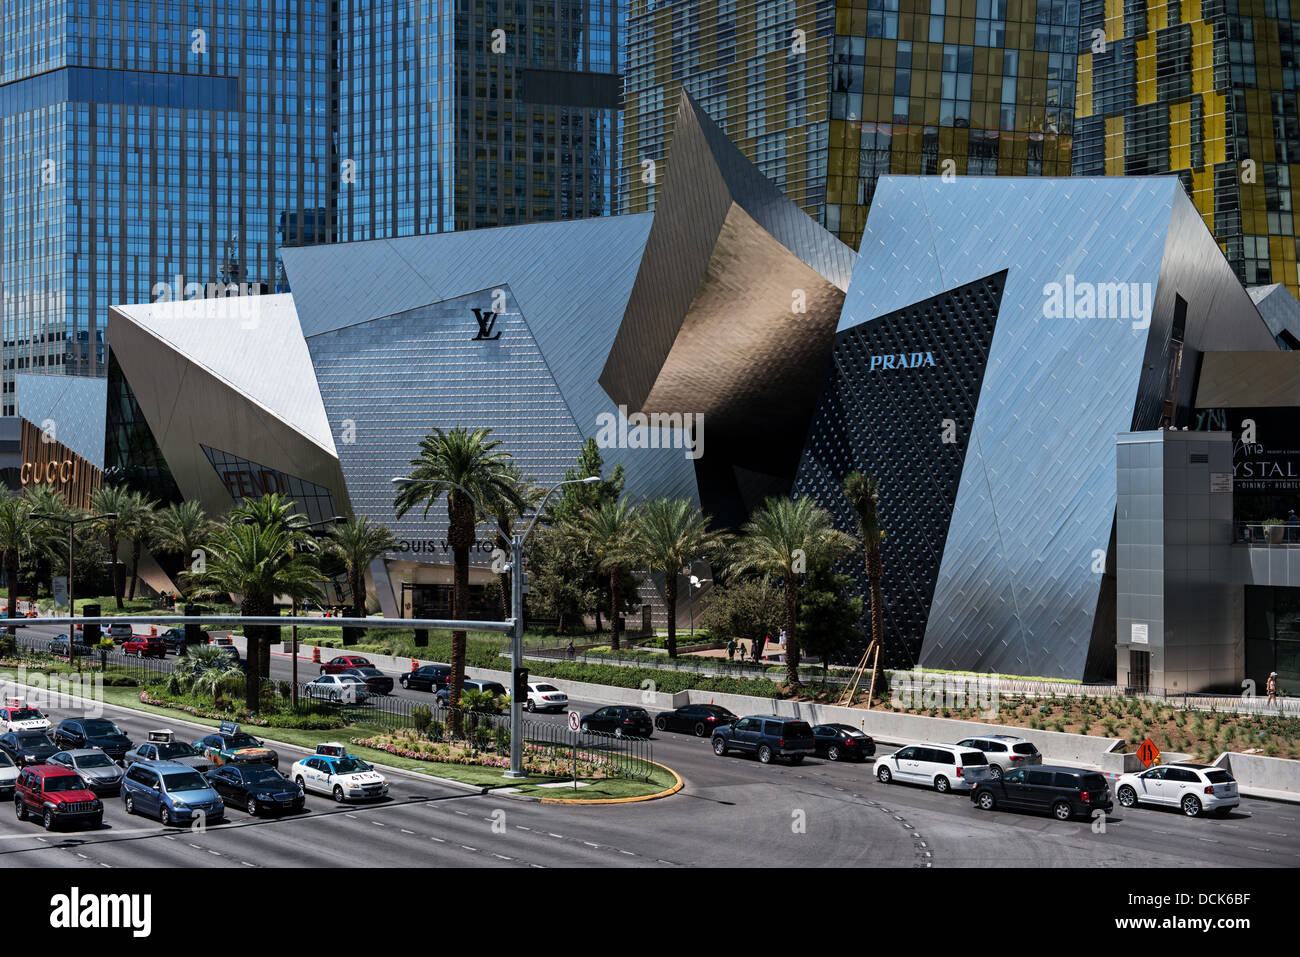 Commerces au centre-ville de cristaux, South Las Vegas Boulevard, Las Vegas, Nevada, USA Banque D'Images